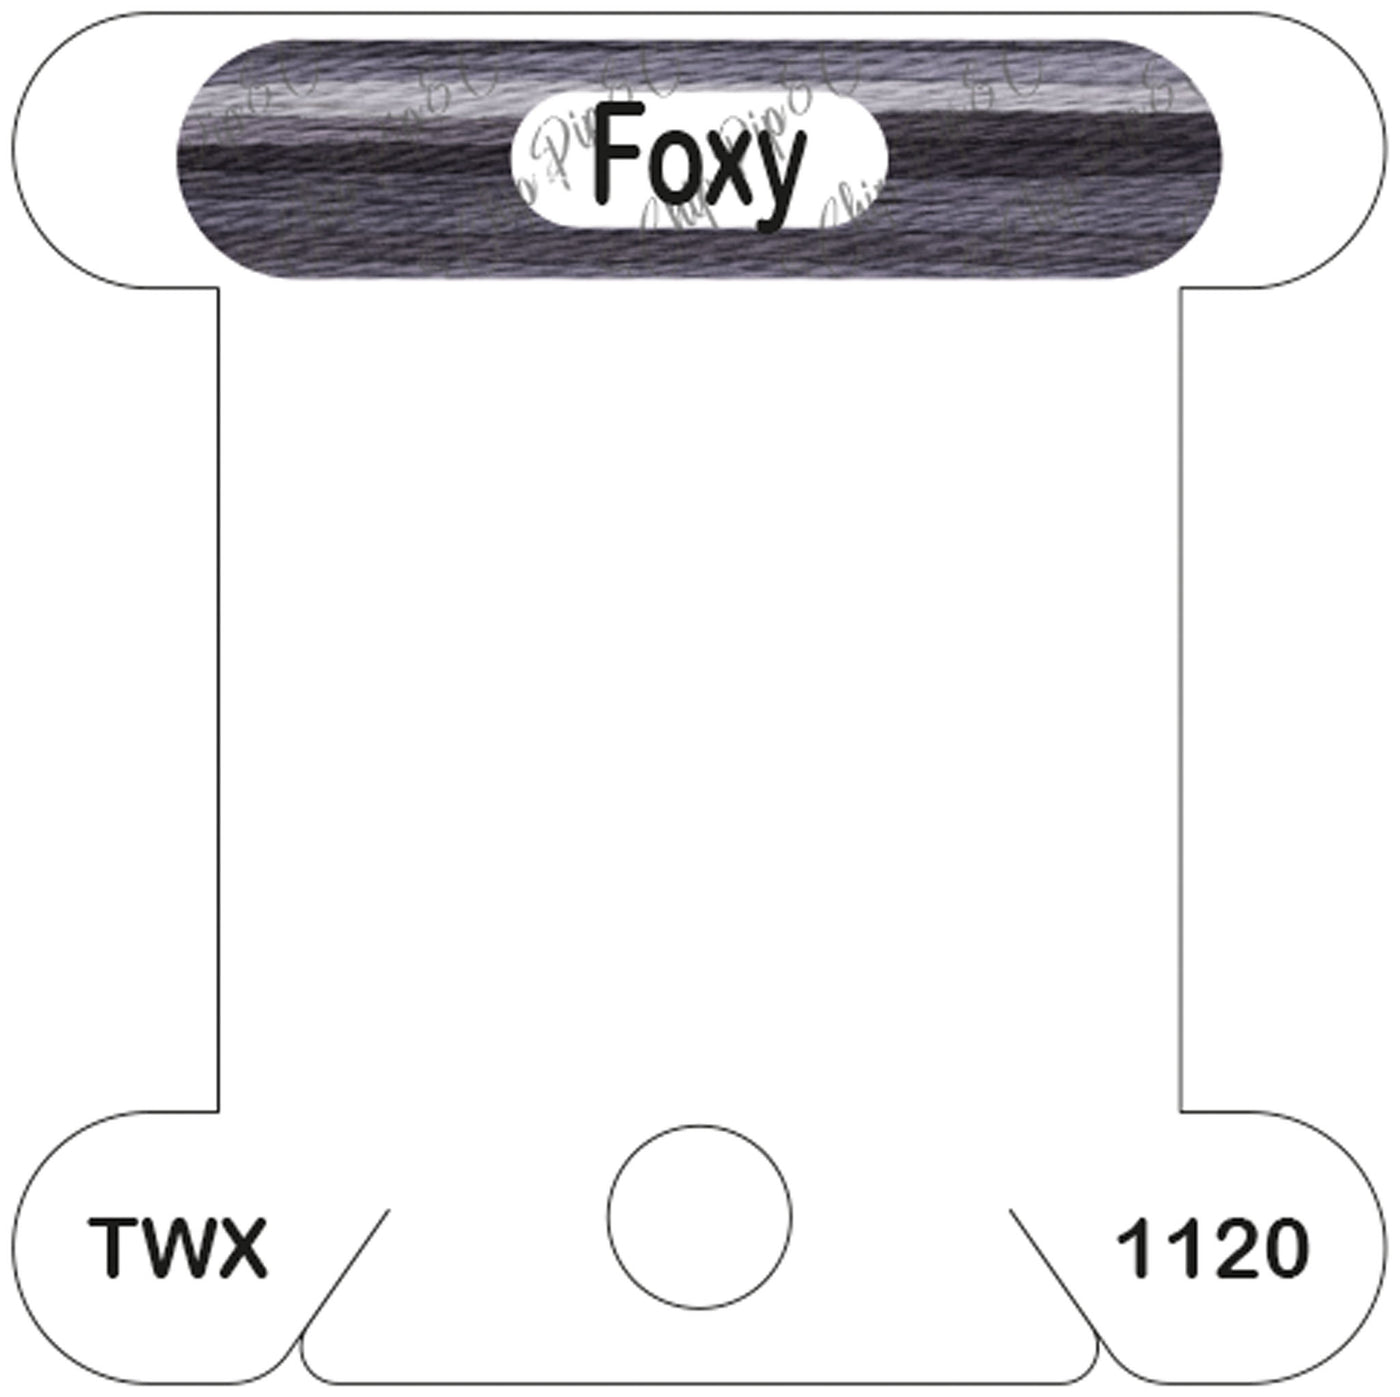 ThreadworX Foxy acrylic bobbin